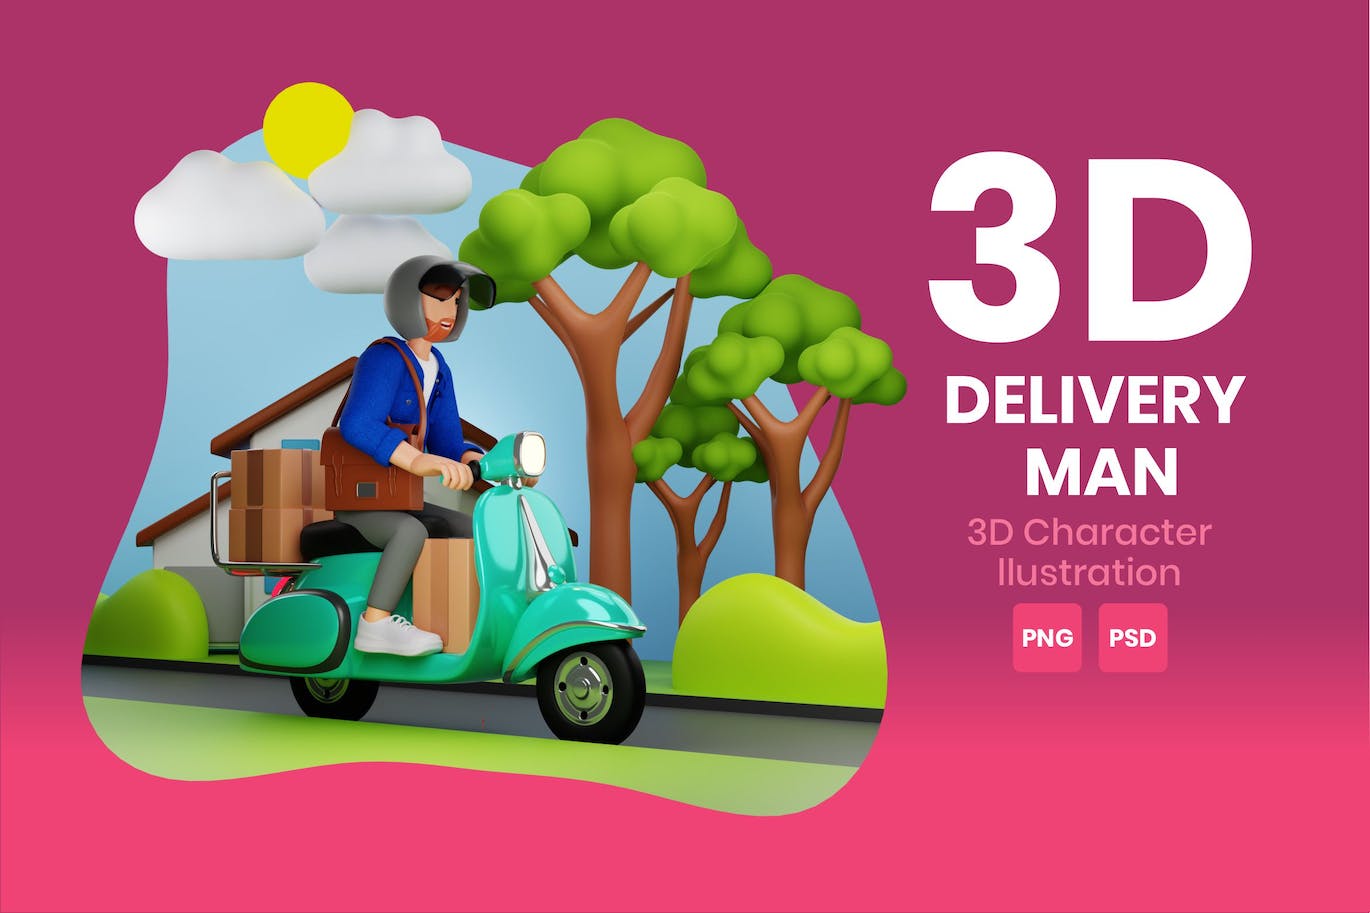 送货员3D角色插画素材 Delivery Man 3D Character Illustration 图片素材 第1张